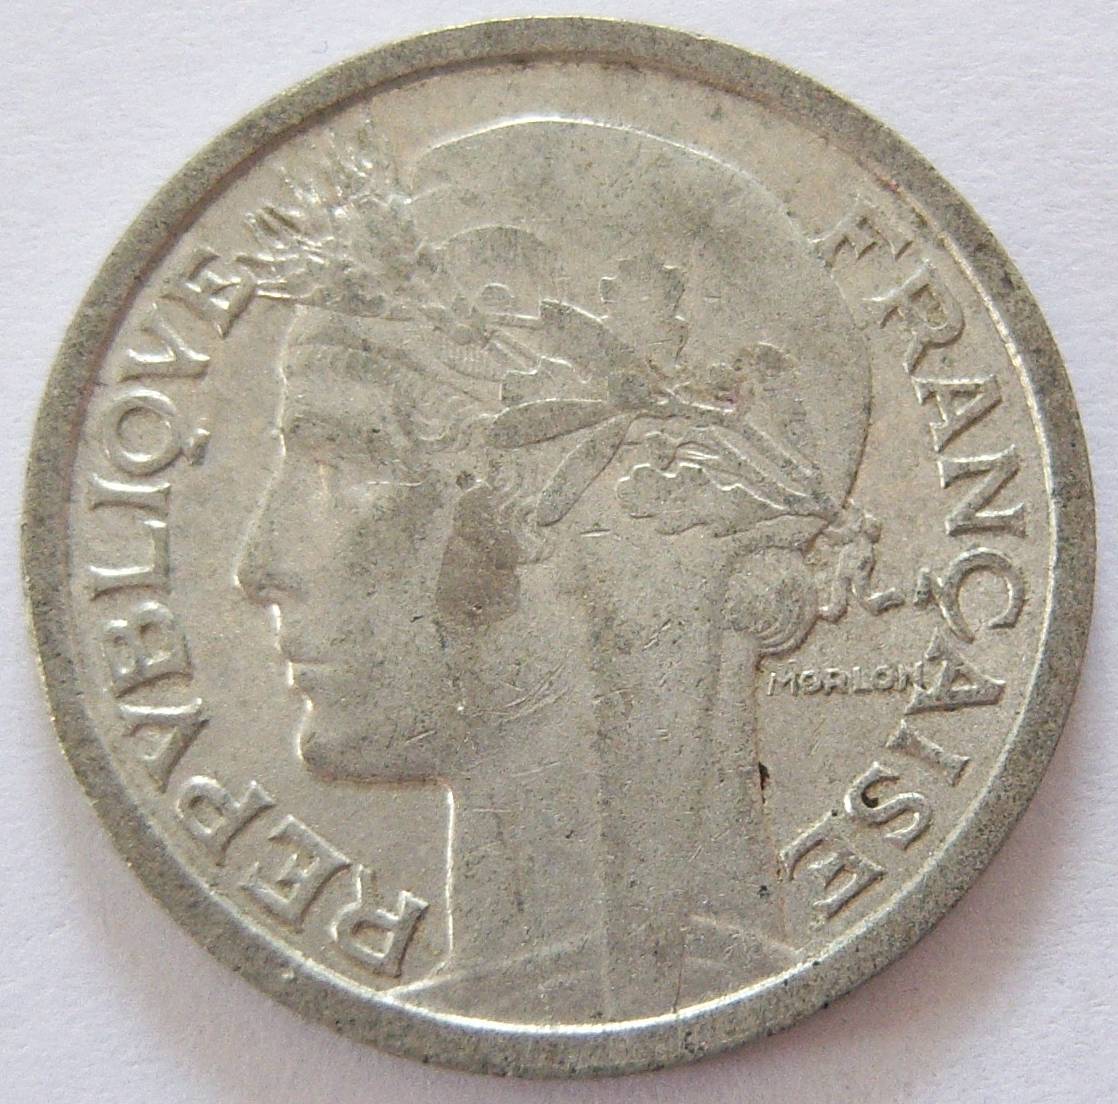  Frankreich 1 Franc 1947   